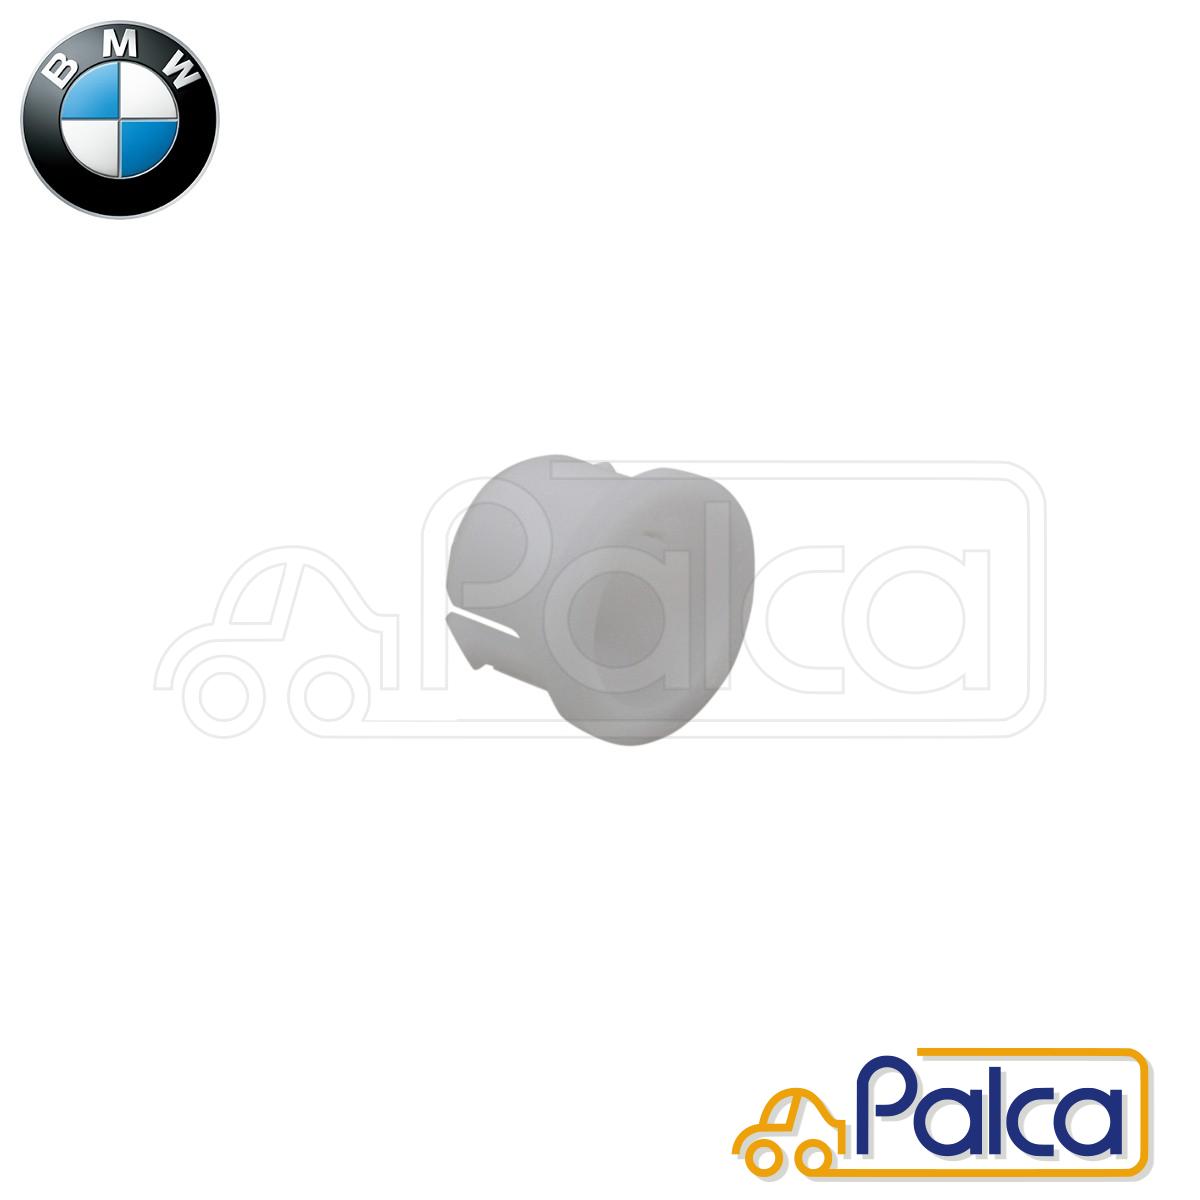 BMW MINI Mini clutch Release shaft bush 16MM | R50 R52 R53/One Cooper CooperS JCW | original 23110530904